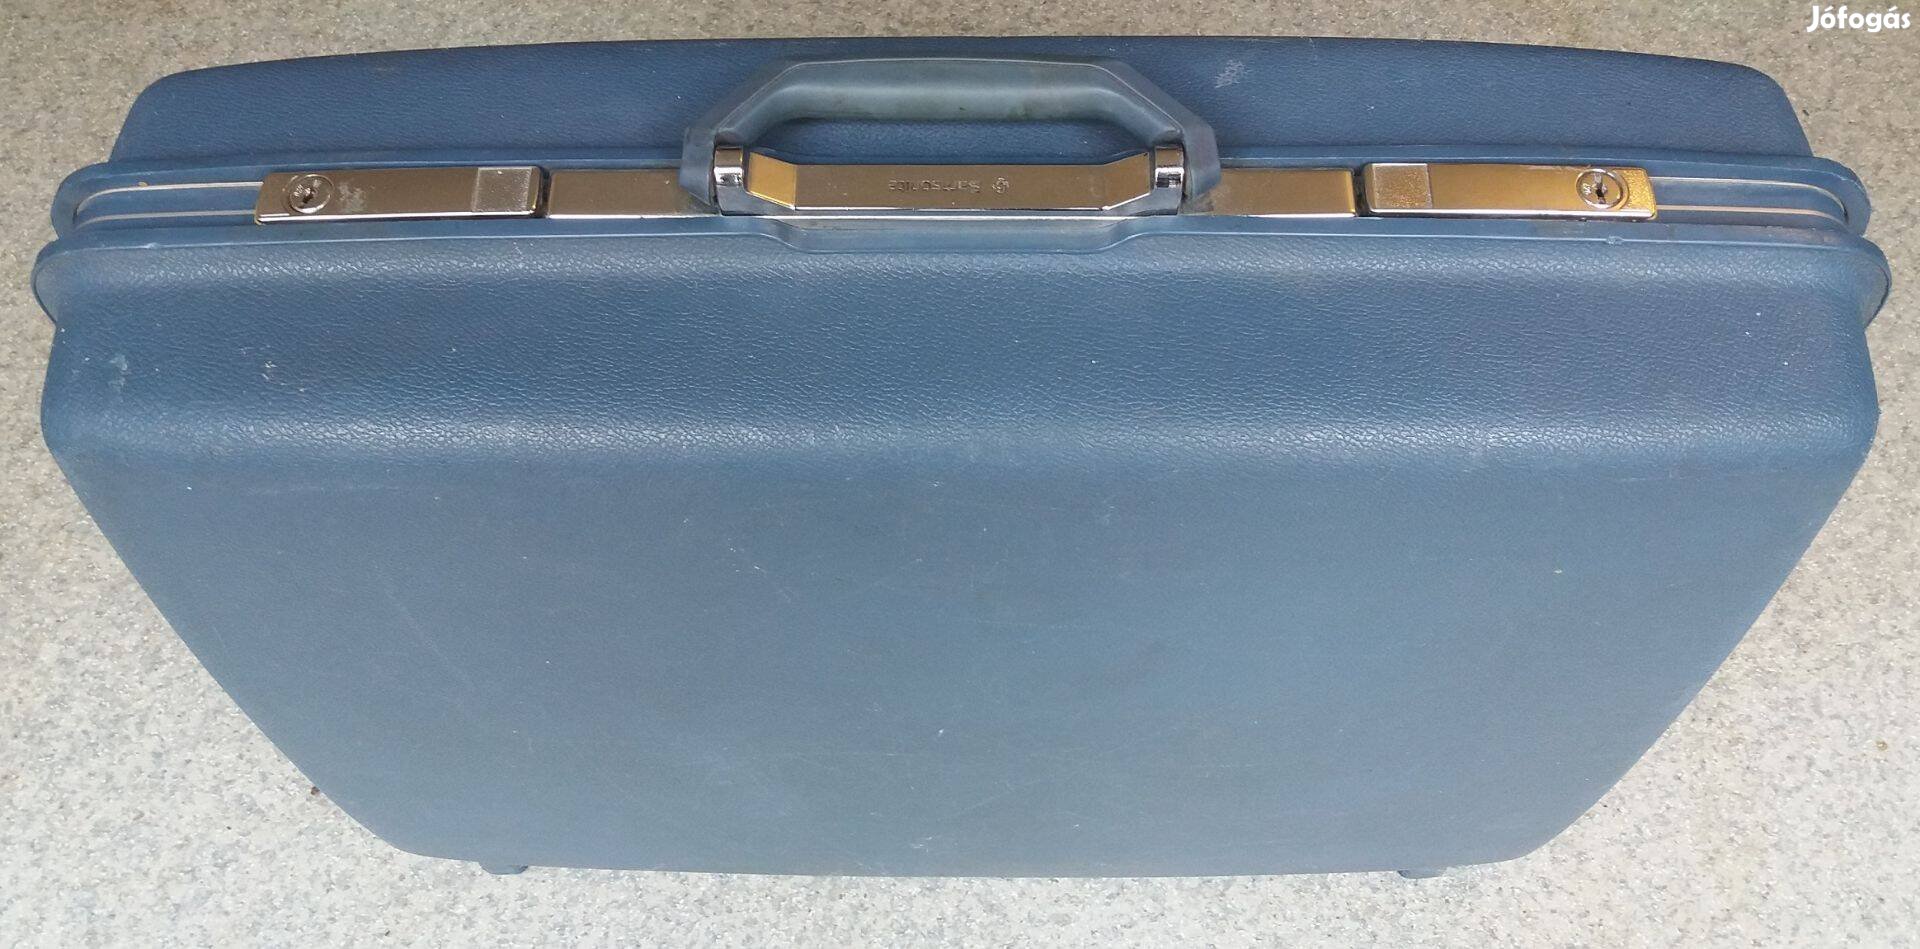 Utazz kényelmesen egy elegáns Samsonite bőrönddel